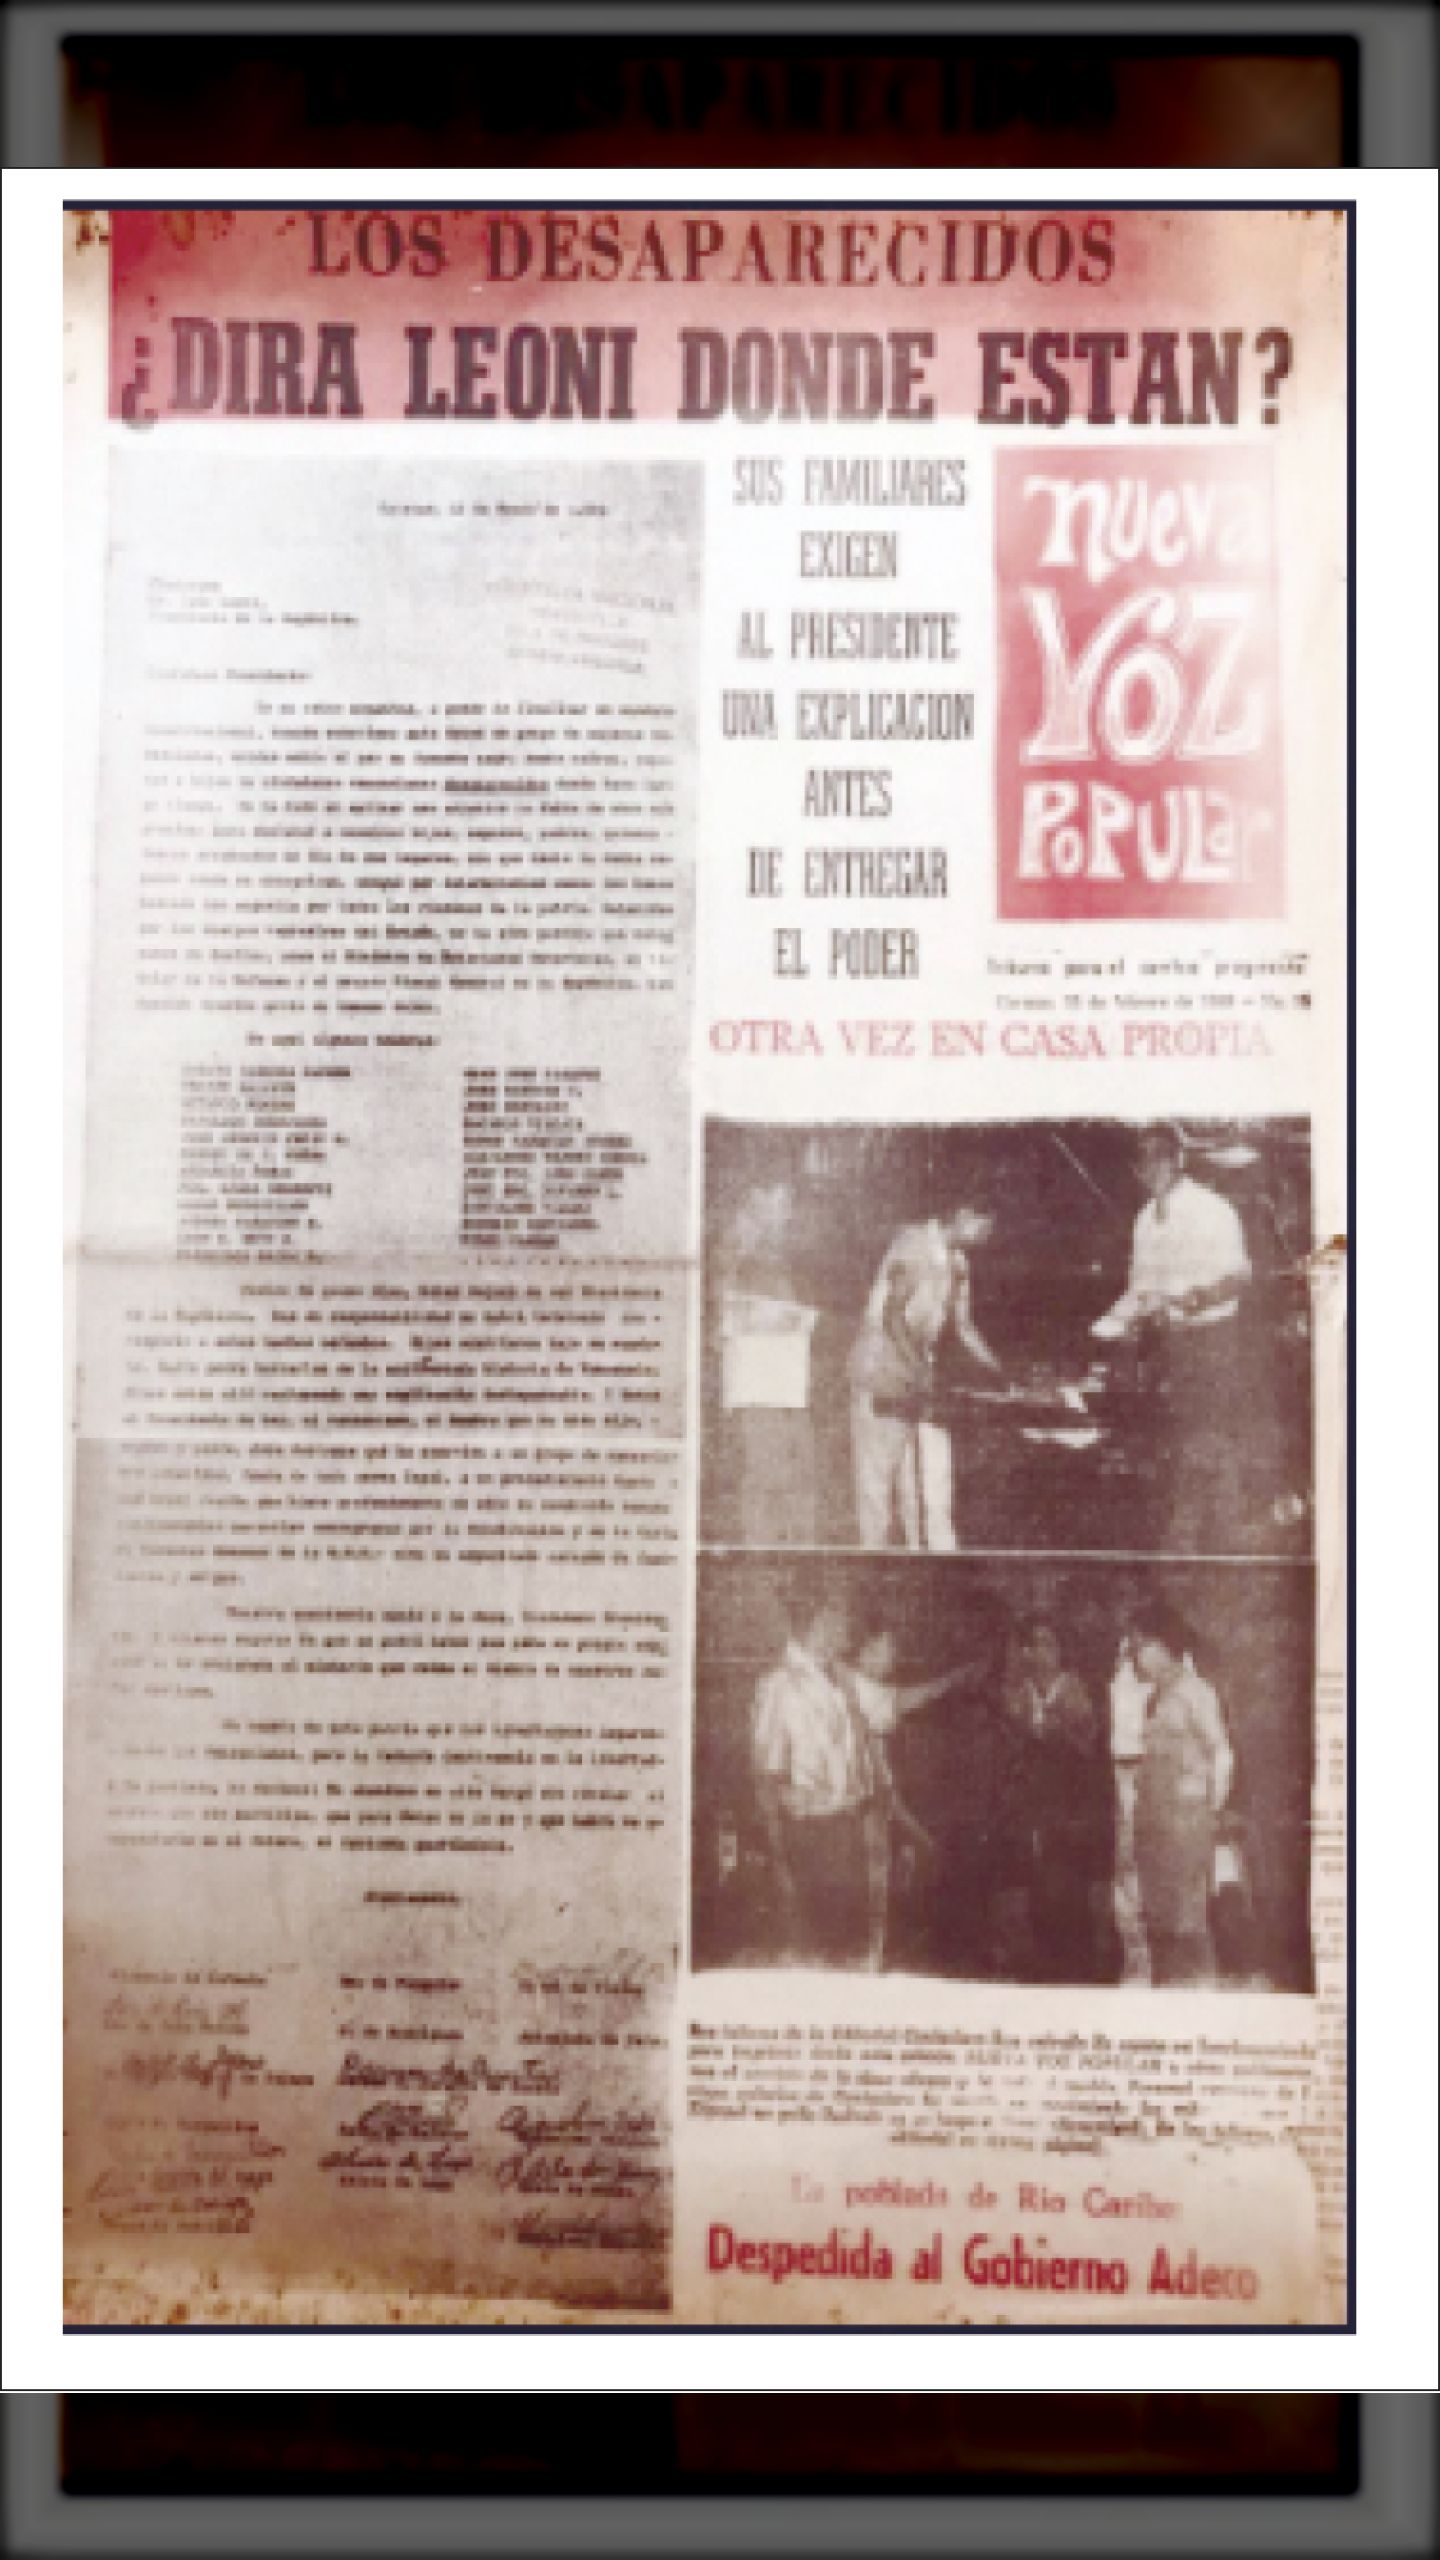 ¿DIRÁ LEONI DONDE ESTÁN LOS DESAPARECIDOS DE SU GOBIERNO? (NUEVA VOZ POPULAR, 25 de febrero 1969)